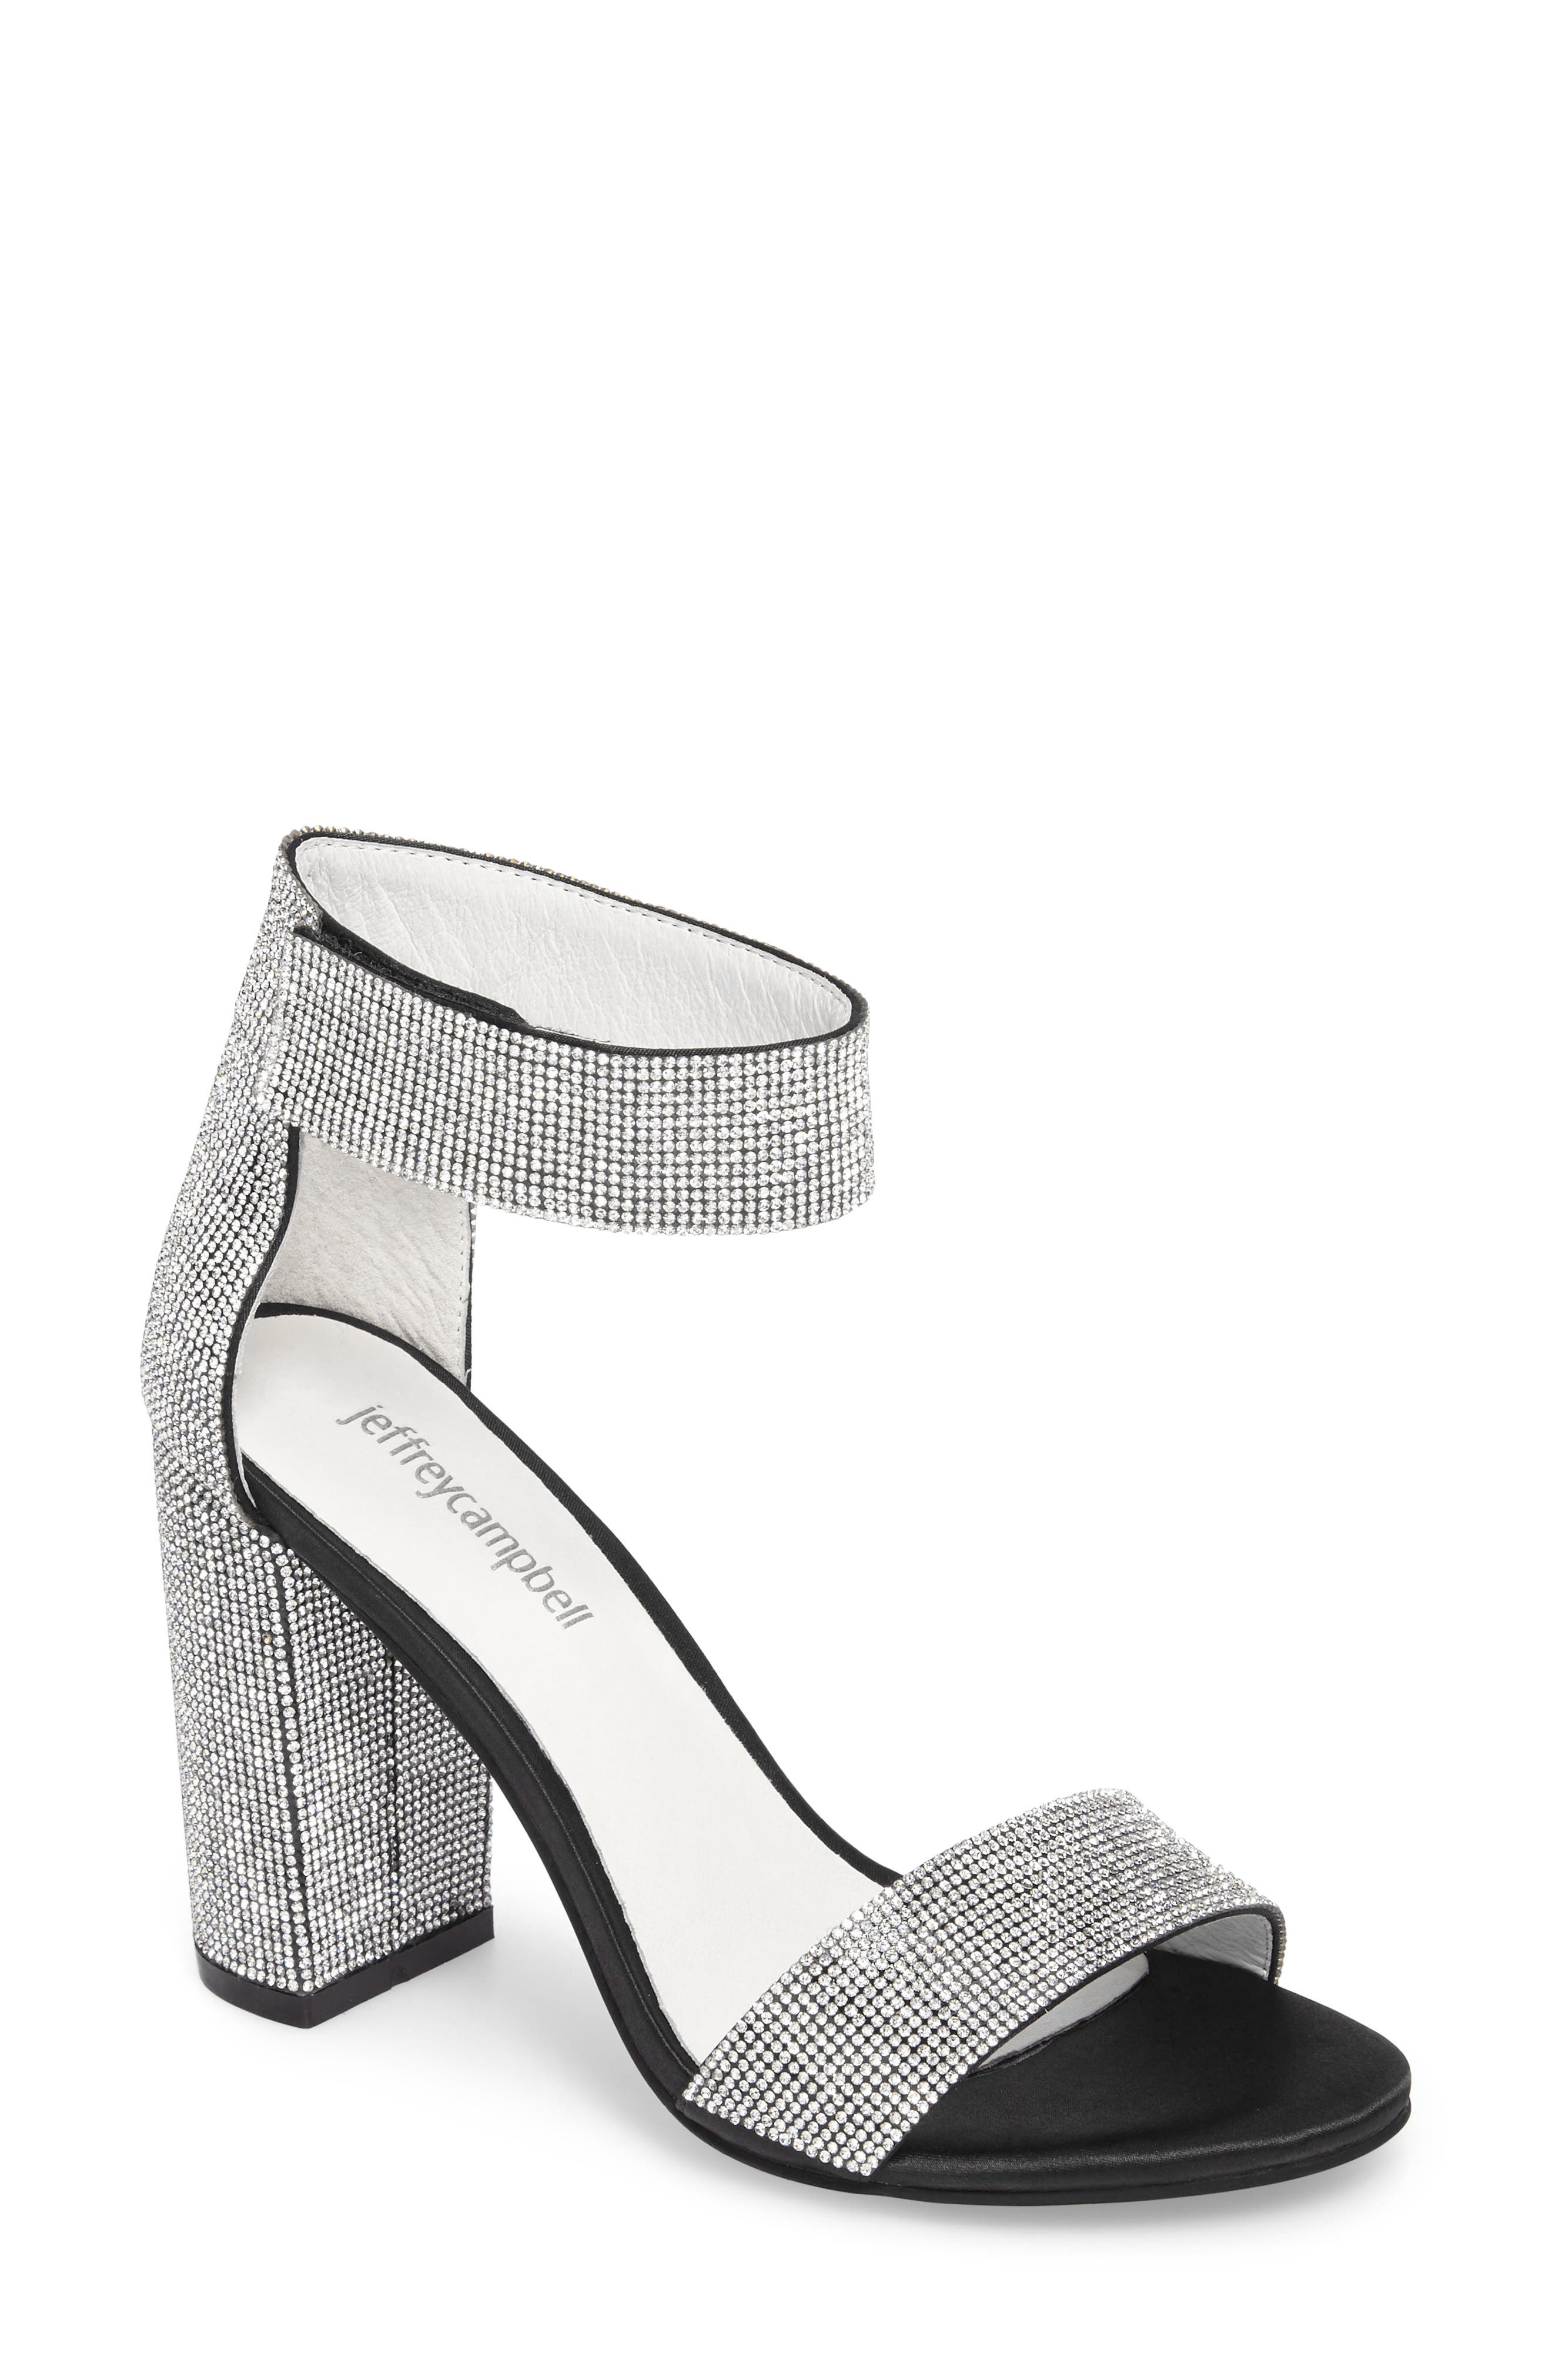 silver heels canada